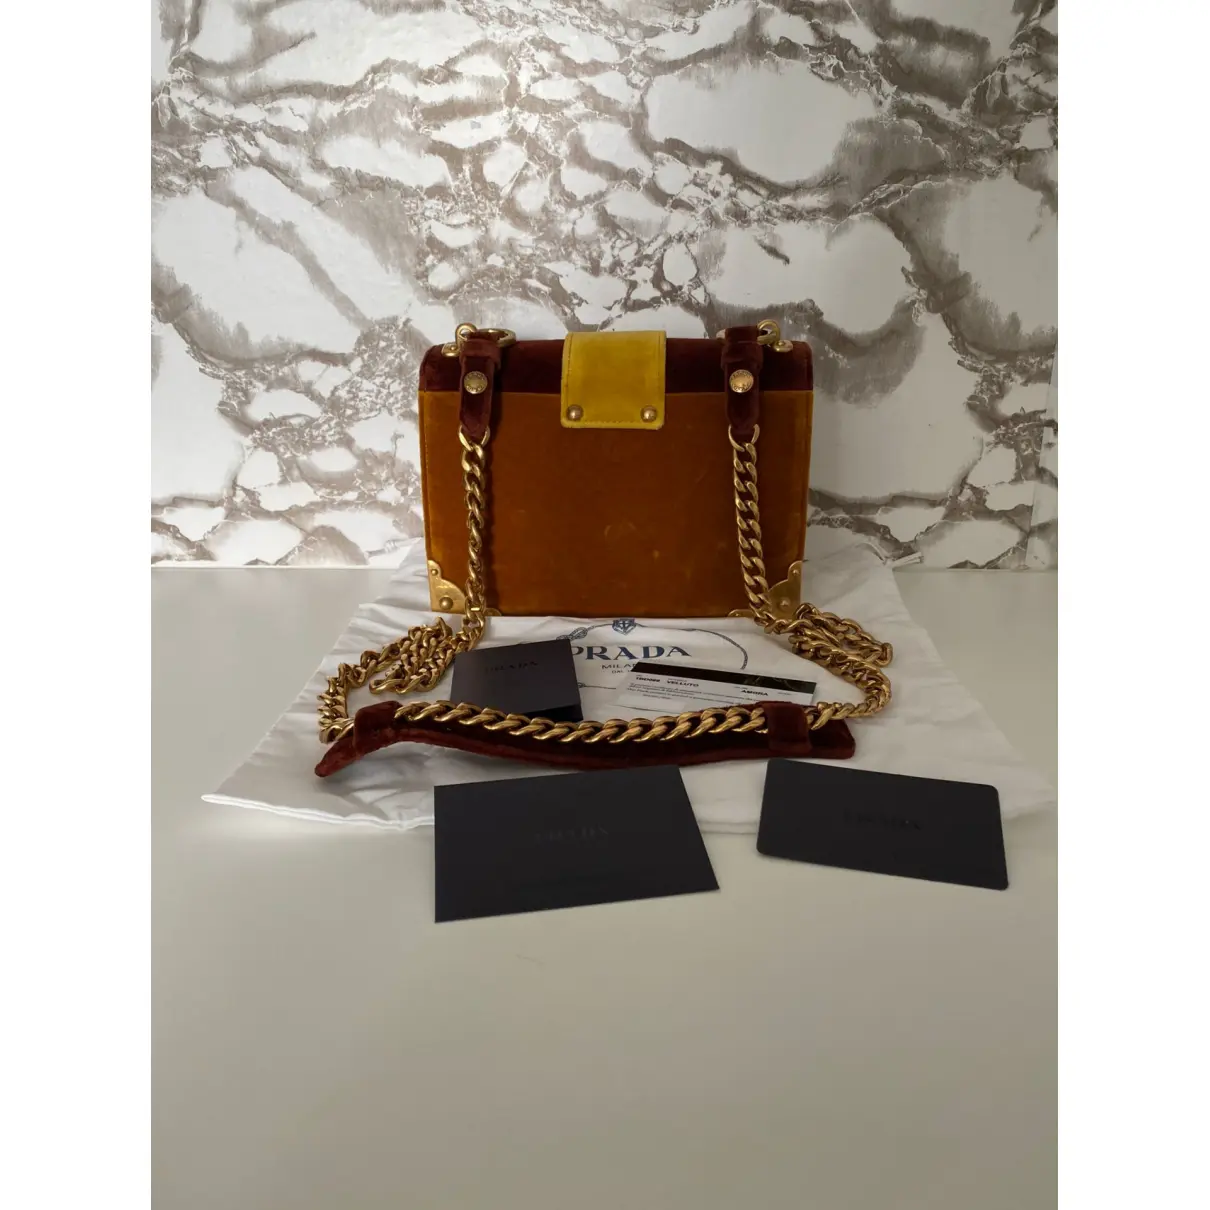 Buy Prada Cahier velvet handbag online